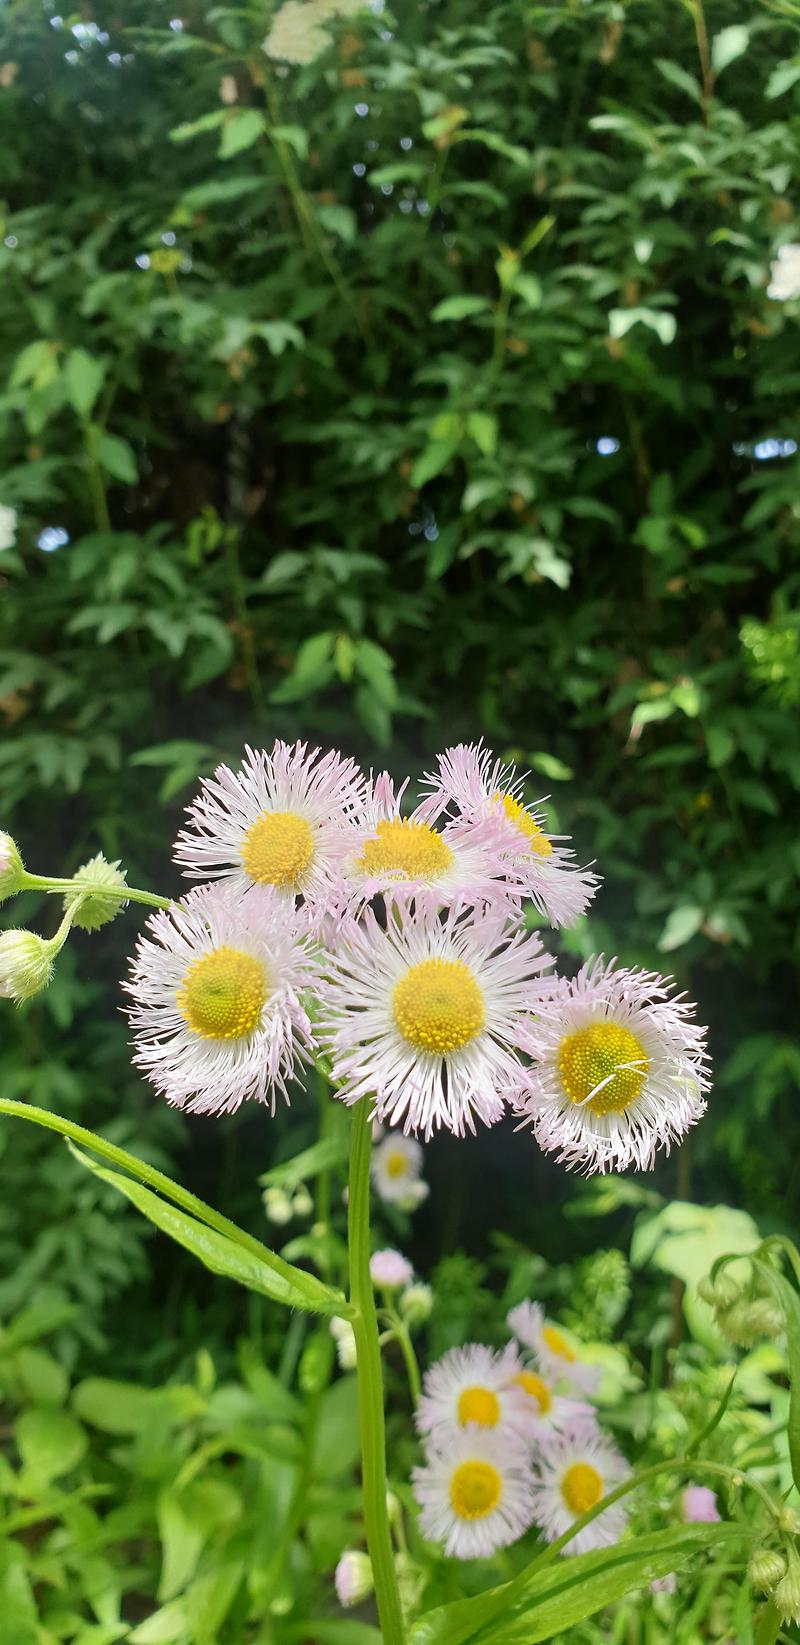 [꽃] 개망초 꽃말이 참 좋습니다